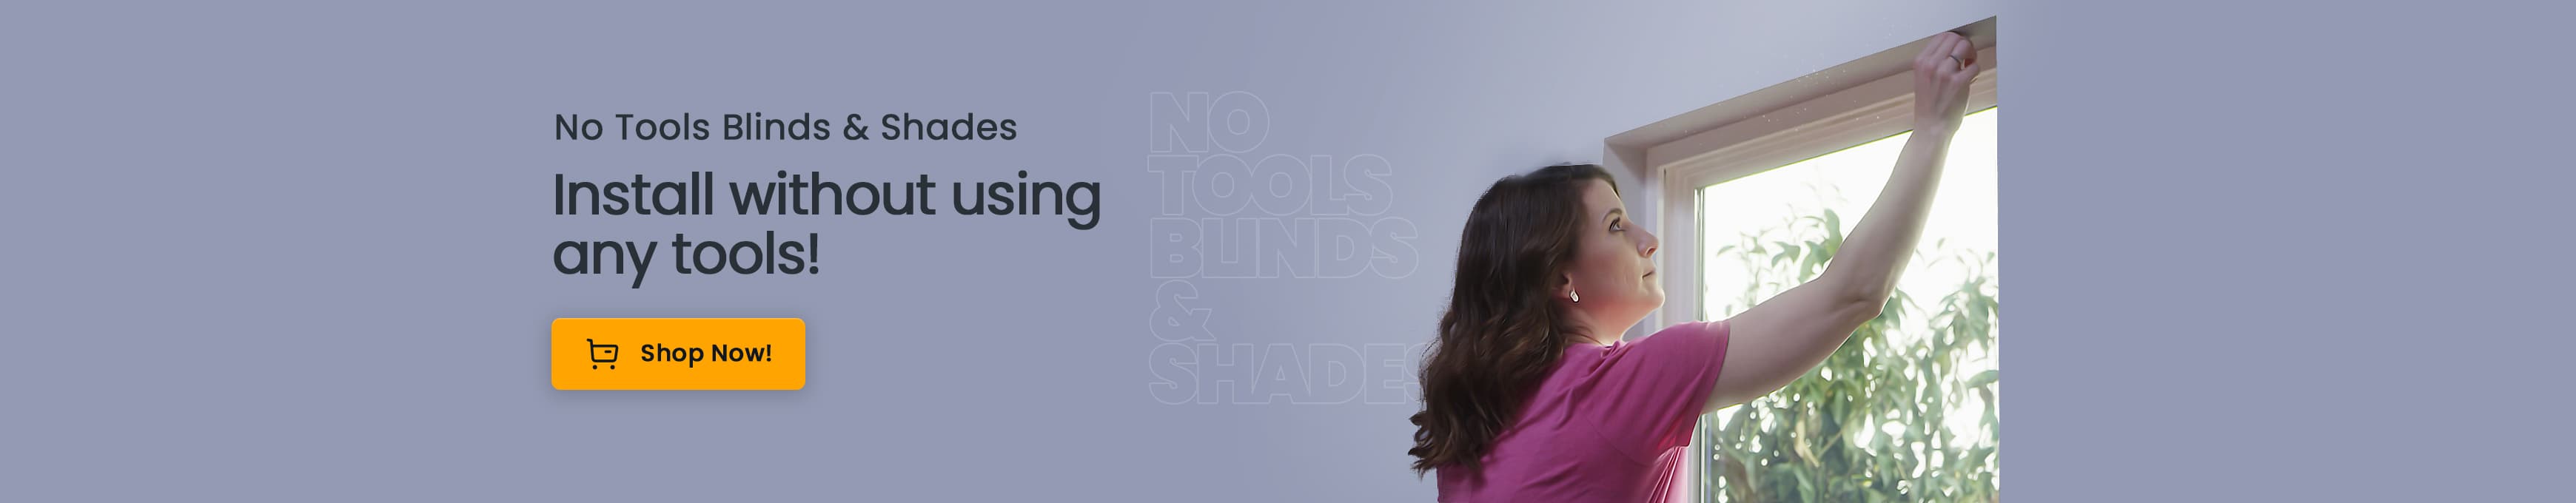 No Tools Blinds & Shades